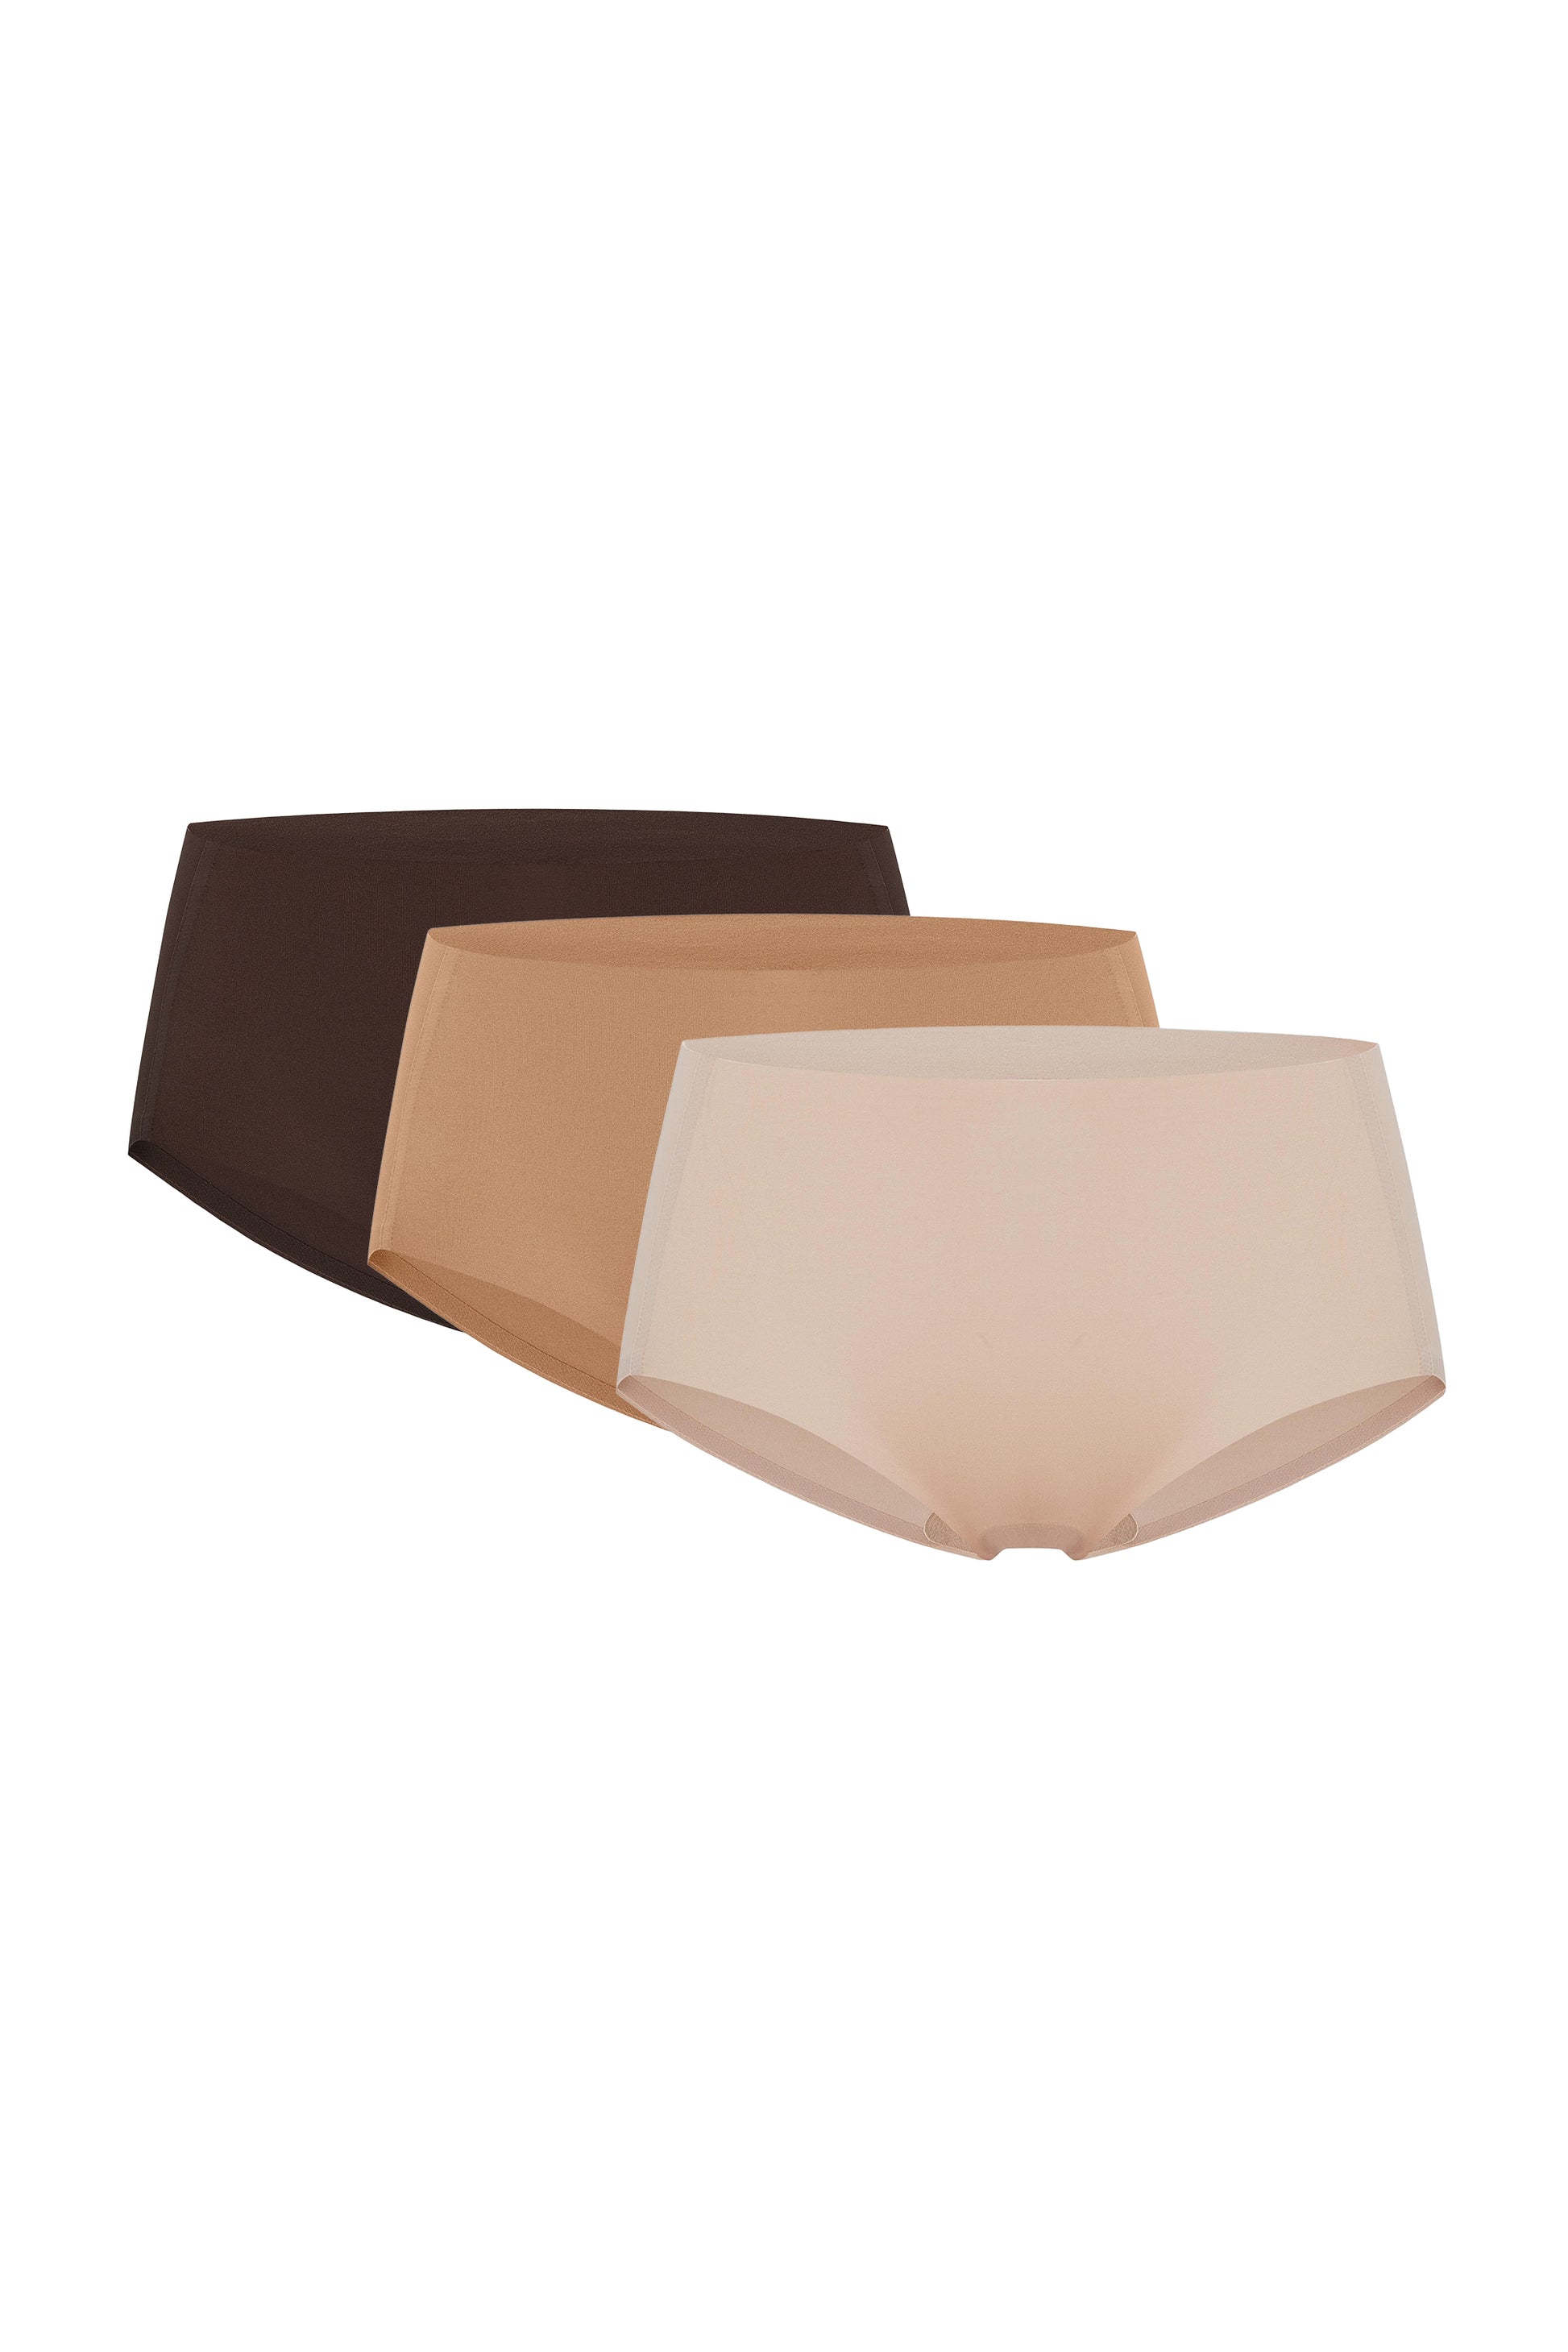 Flay lay images of beige underwear, dark tan underwear, and brown underwear